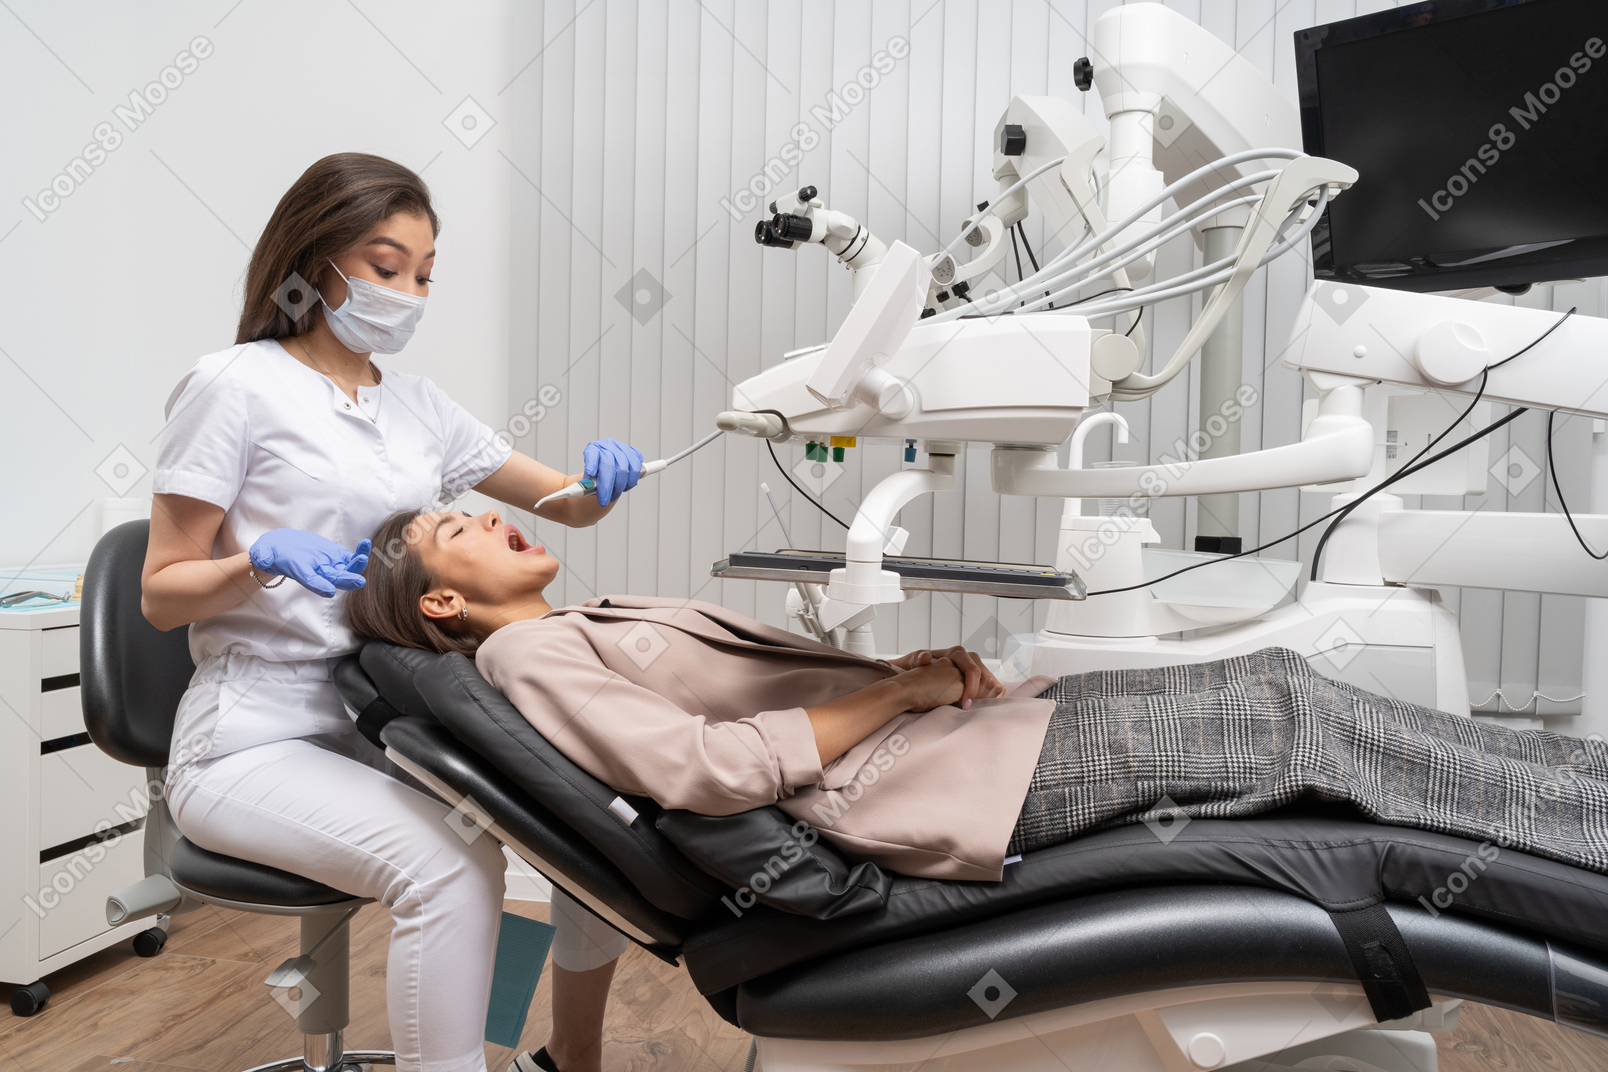 Toute la longueur d'une femme dentiste guérissant sa patiente couchée dans une armoire d'hôpital